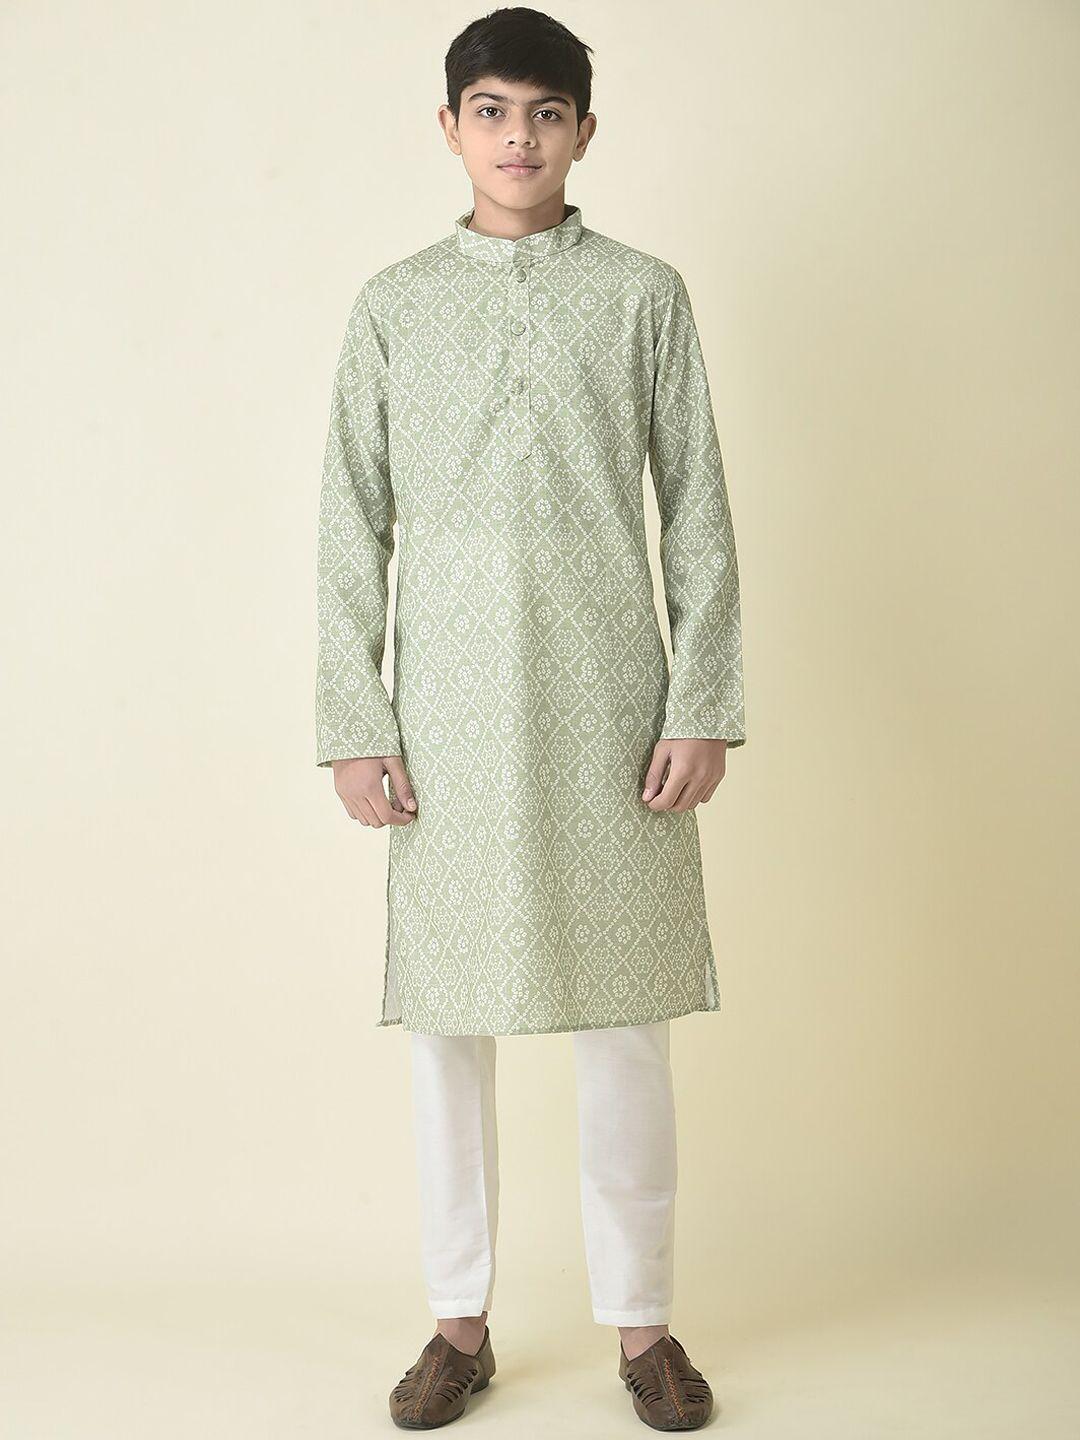 tabard boys bandhani printed gotta patti pure cotton kurta with pyjamas